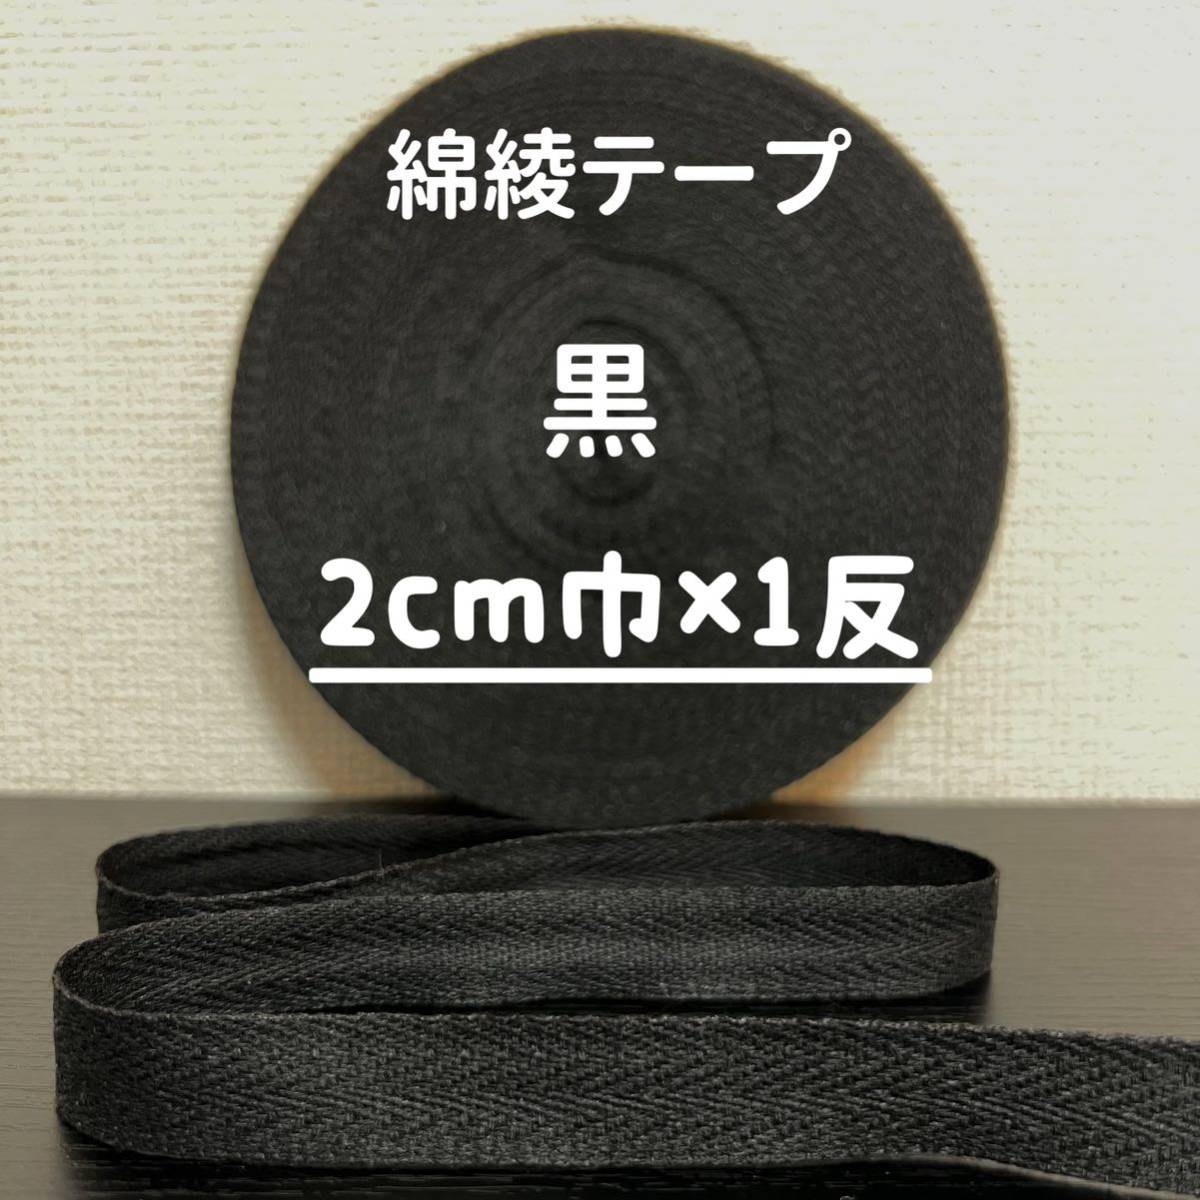 綿綾テープ コットン杉綾テープ20mm幅黒 ブラック2cm巾×1反の画像1